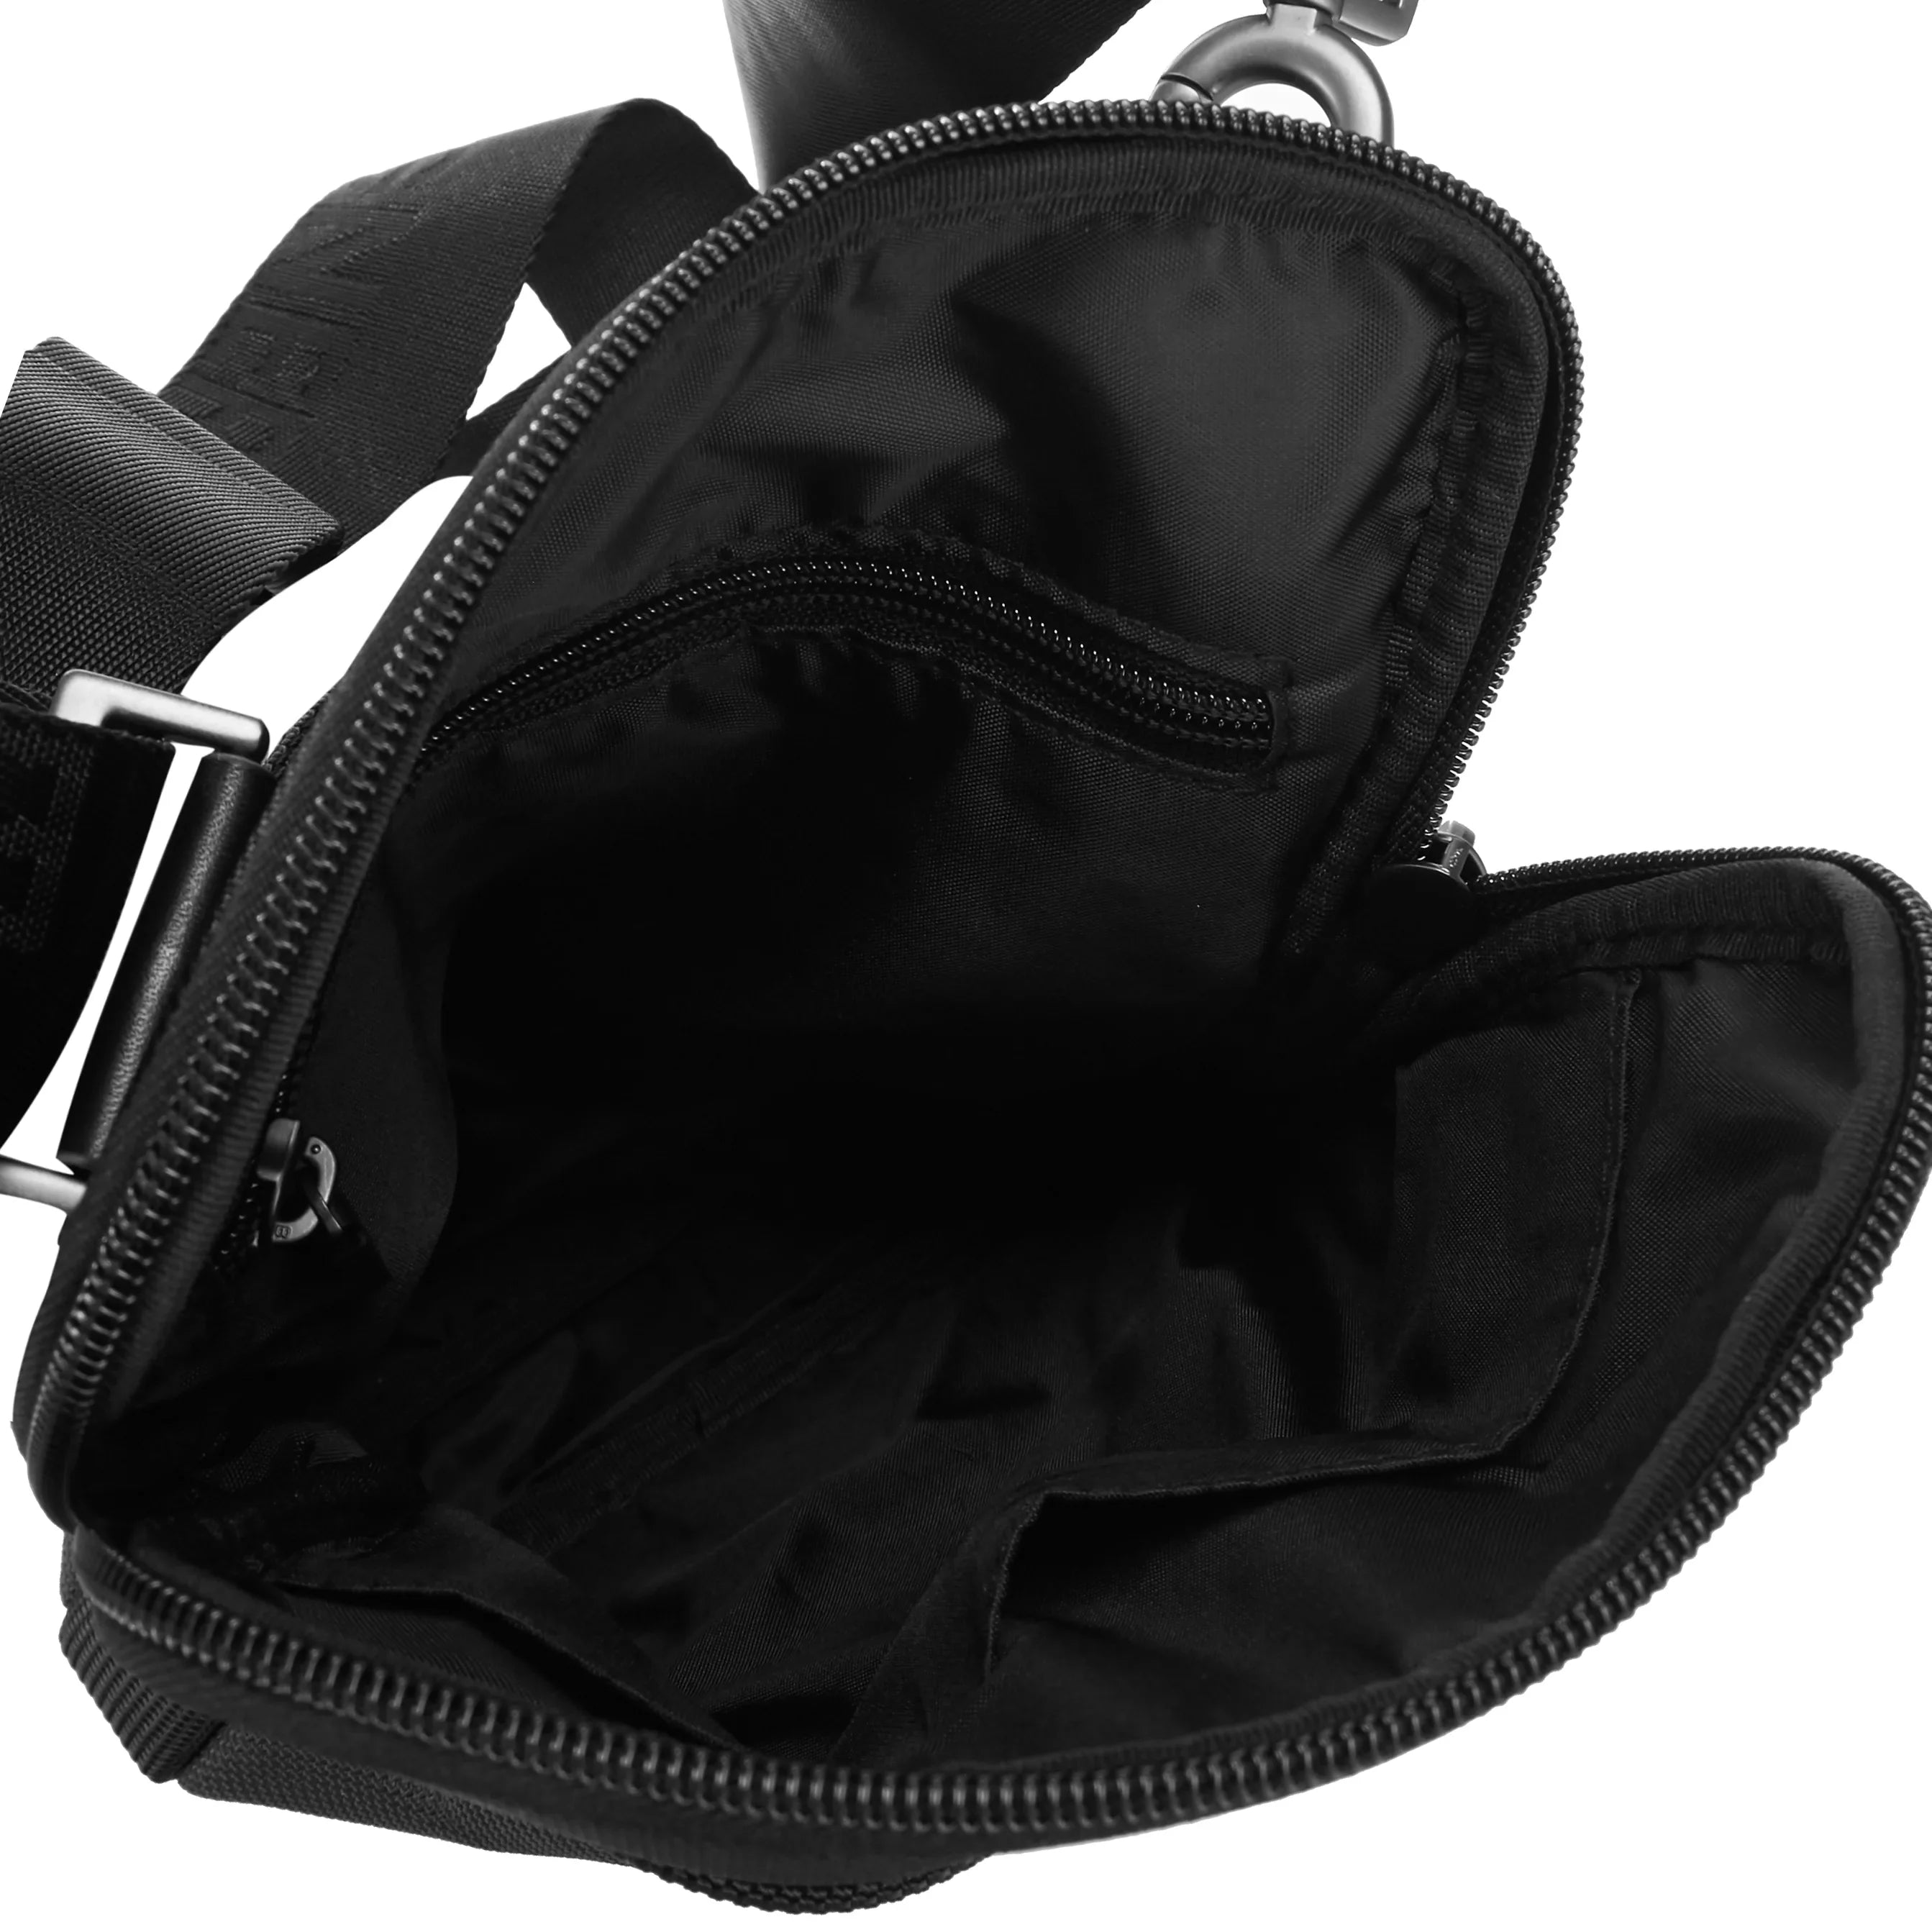 Bogner Keystone Frank Shoulderbag XSVZ 1 24 cm - Black